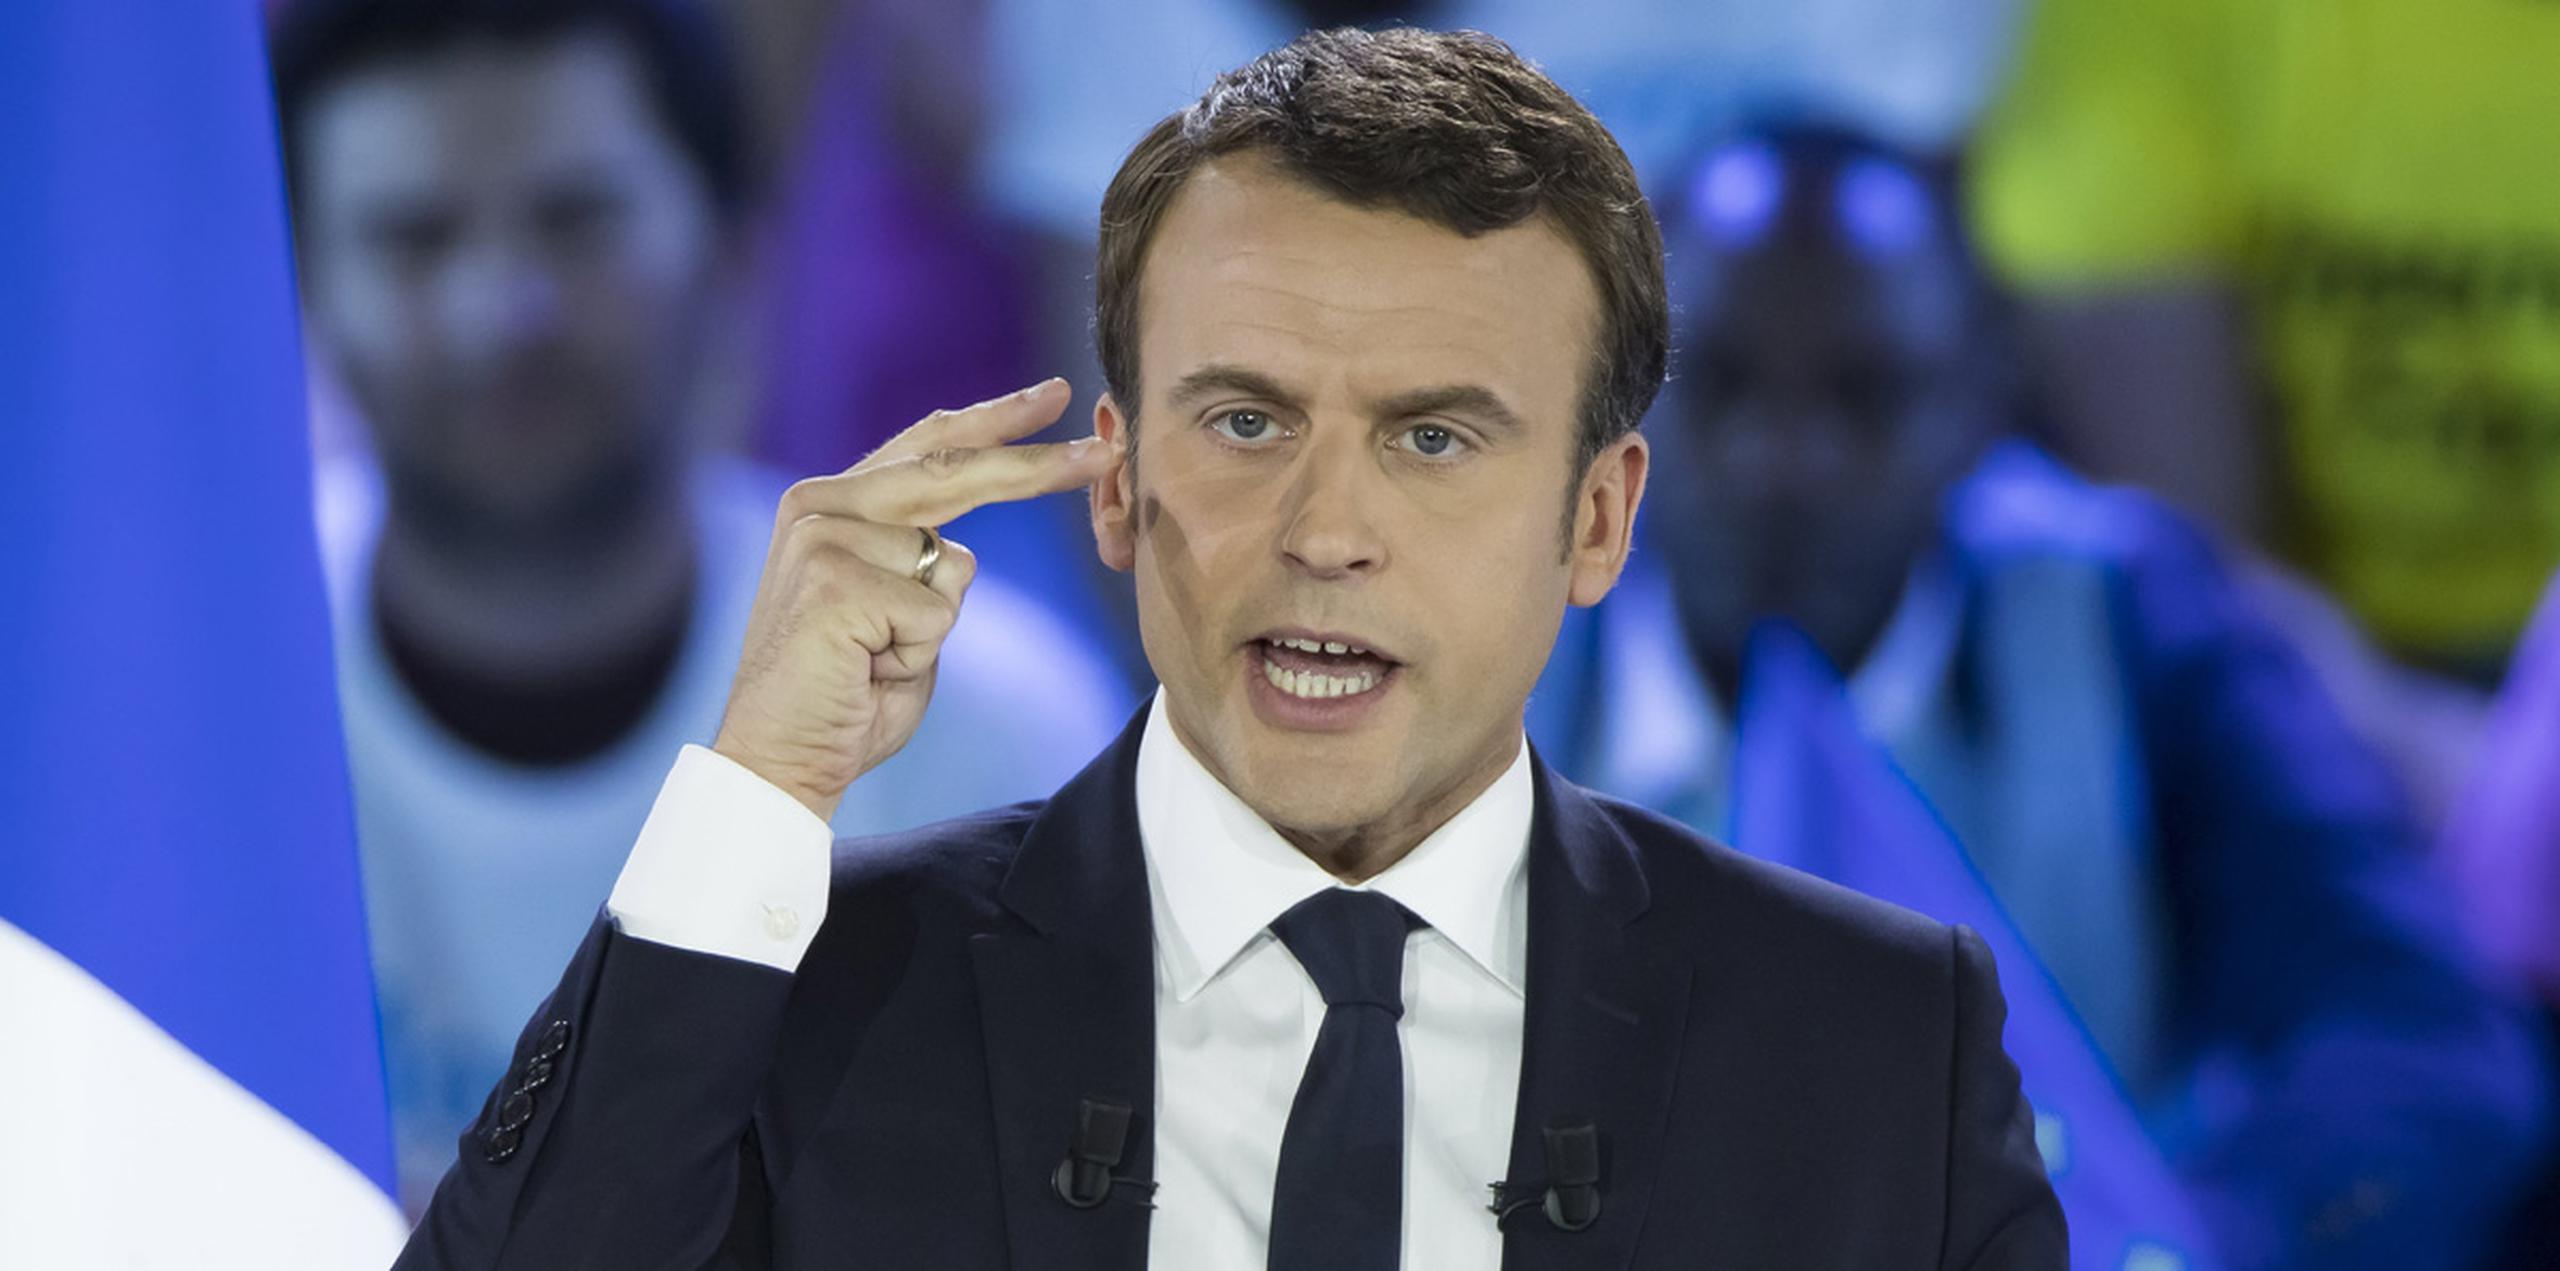 Seis de cada diez futuros votantes de Macron aclaran que lo harán "por defecto" y no por adhesión a sus ideas, frente al 59 % que respaldan a Le Pen por convicción. (AP)